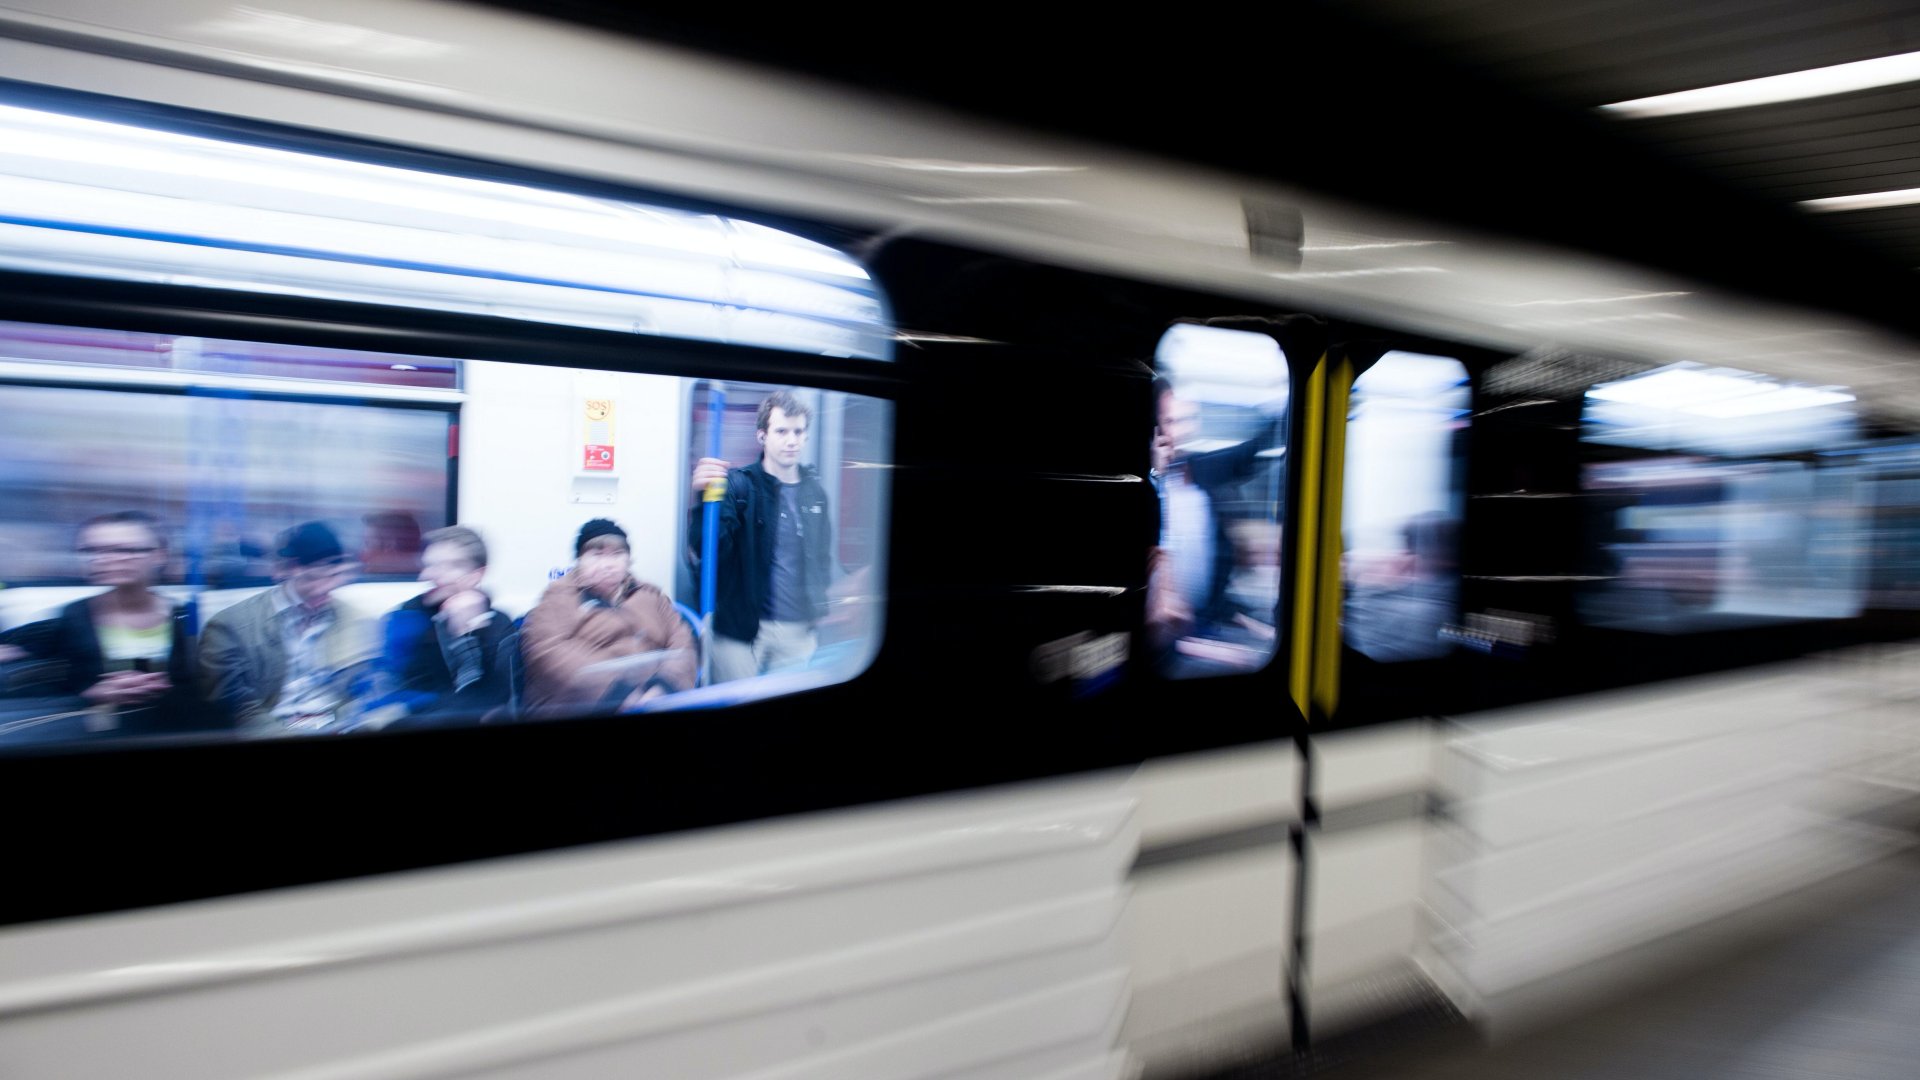 Utasok az M3-as vonalon közlekedõ elsõ felújított metrószerelvényen Budapesten 2017. március 20-án